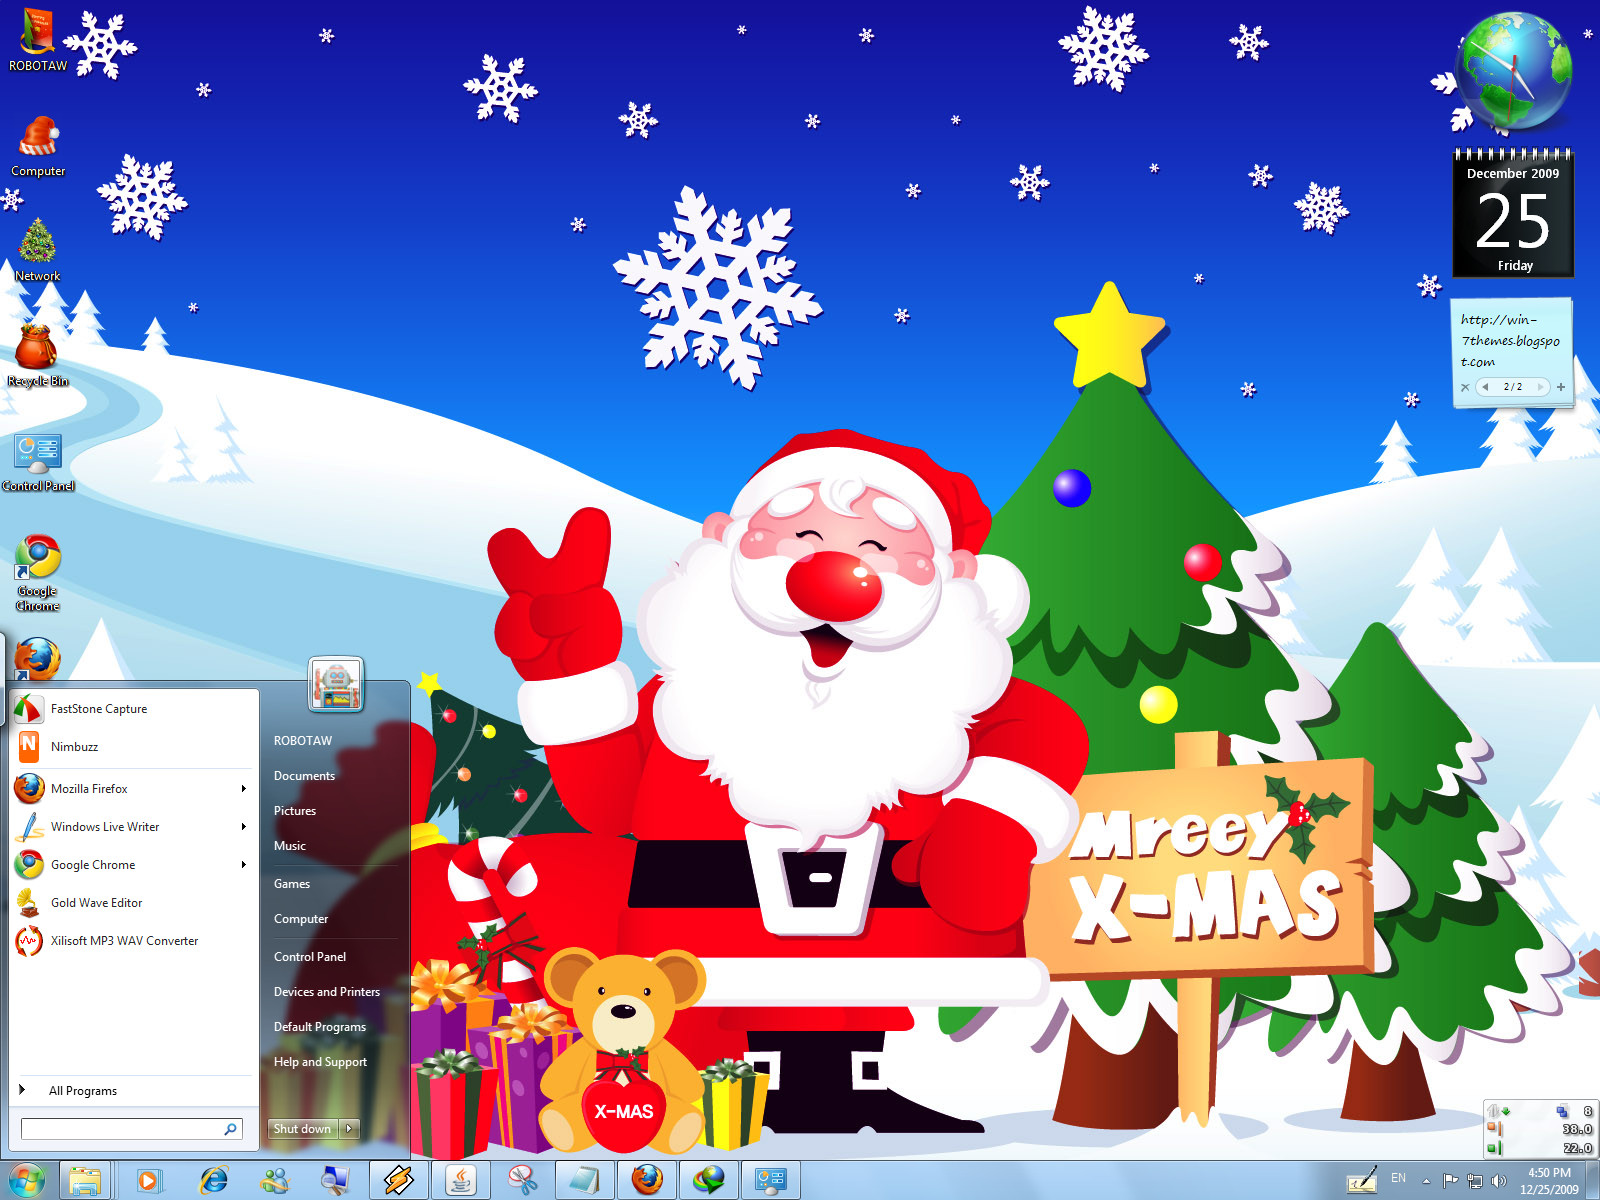 Tìm kiếm một hình nền Giáng sinh hoàn toàn miễn phí cho Windows 7? Hãy tải ngay để thay đổi giao diện máy tính của mình với các hình ảnh đầy hứng khởi và rực rỡ của mùa lễ hội này.